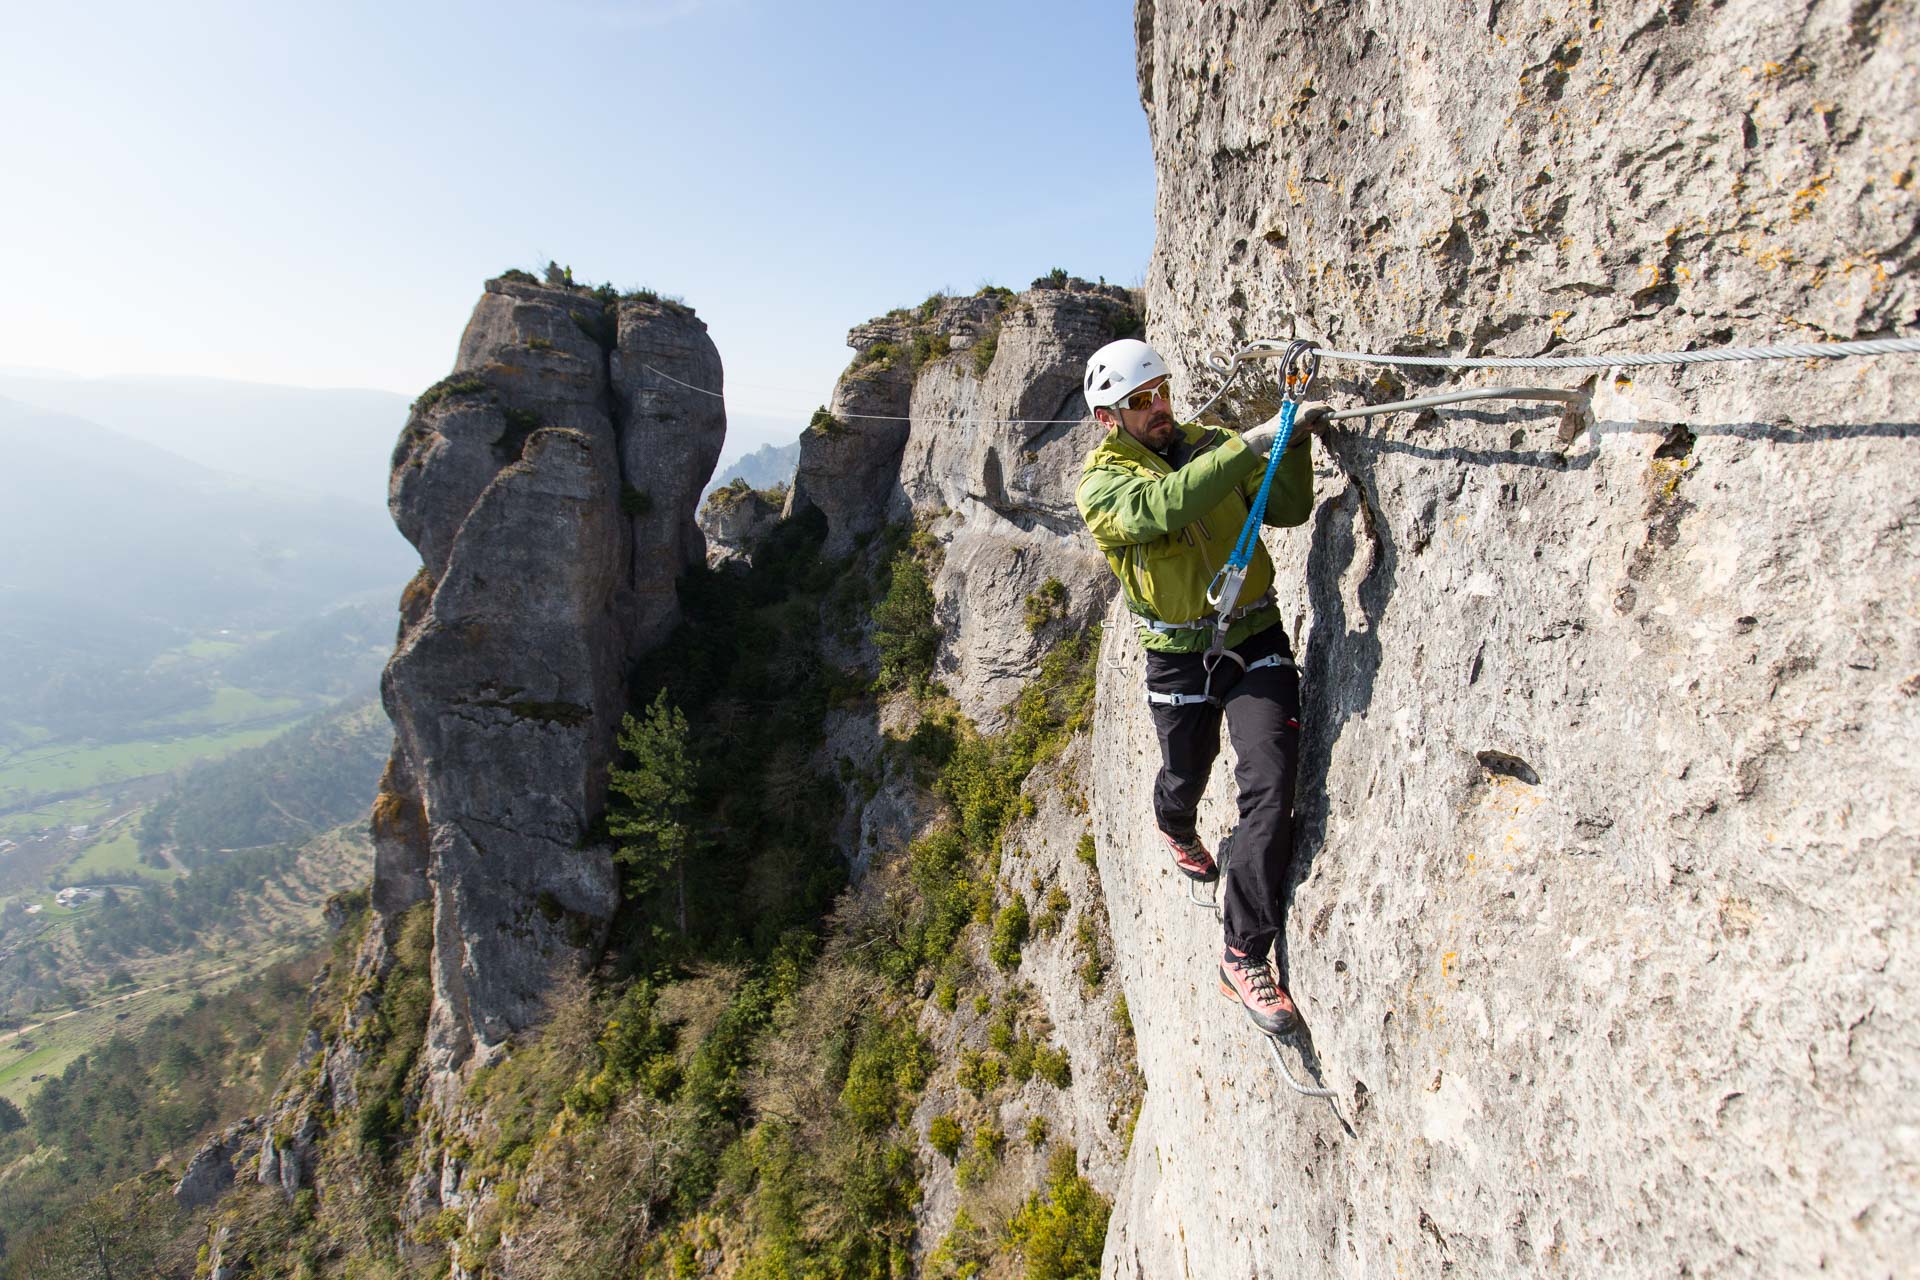 Comment choisir une corde pour l'escalade ou l'alpinisme